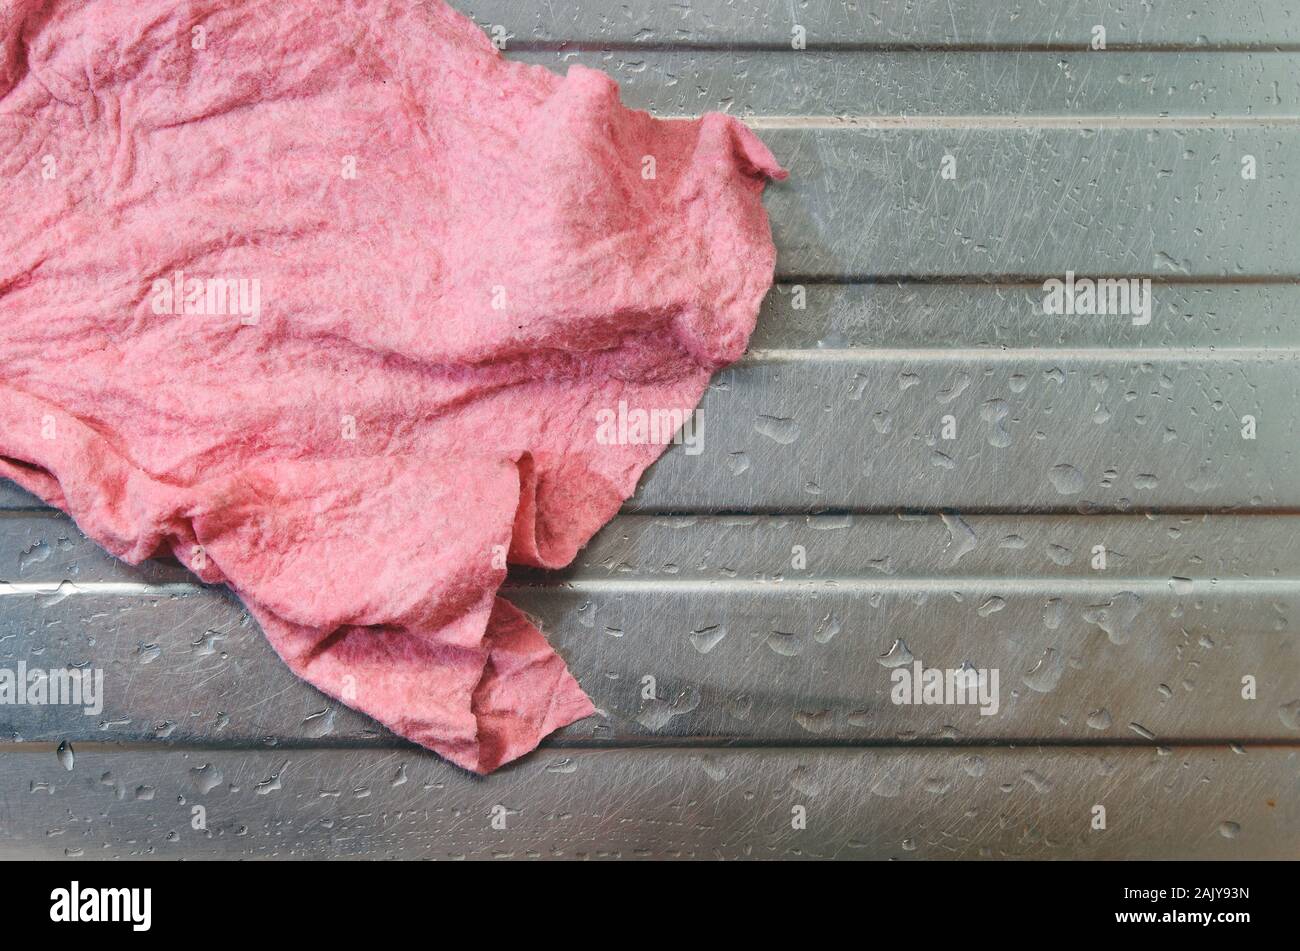 Single nassen Schmutz verwendet rosa Geschirrtuch (waschlappen). Auf einem  Edelstahl Spülbecken mit Wassertropfen herum platziert. Keine Menschen,  echte raw geschossen Stockfotografie - Alamy